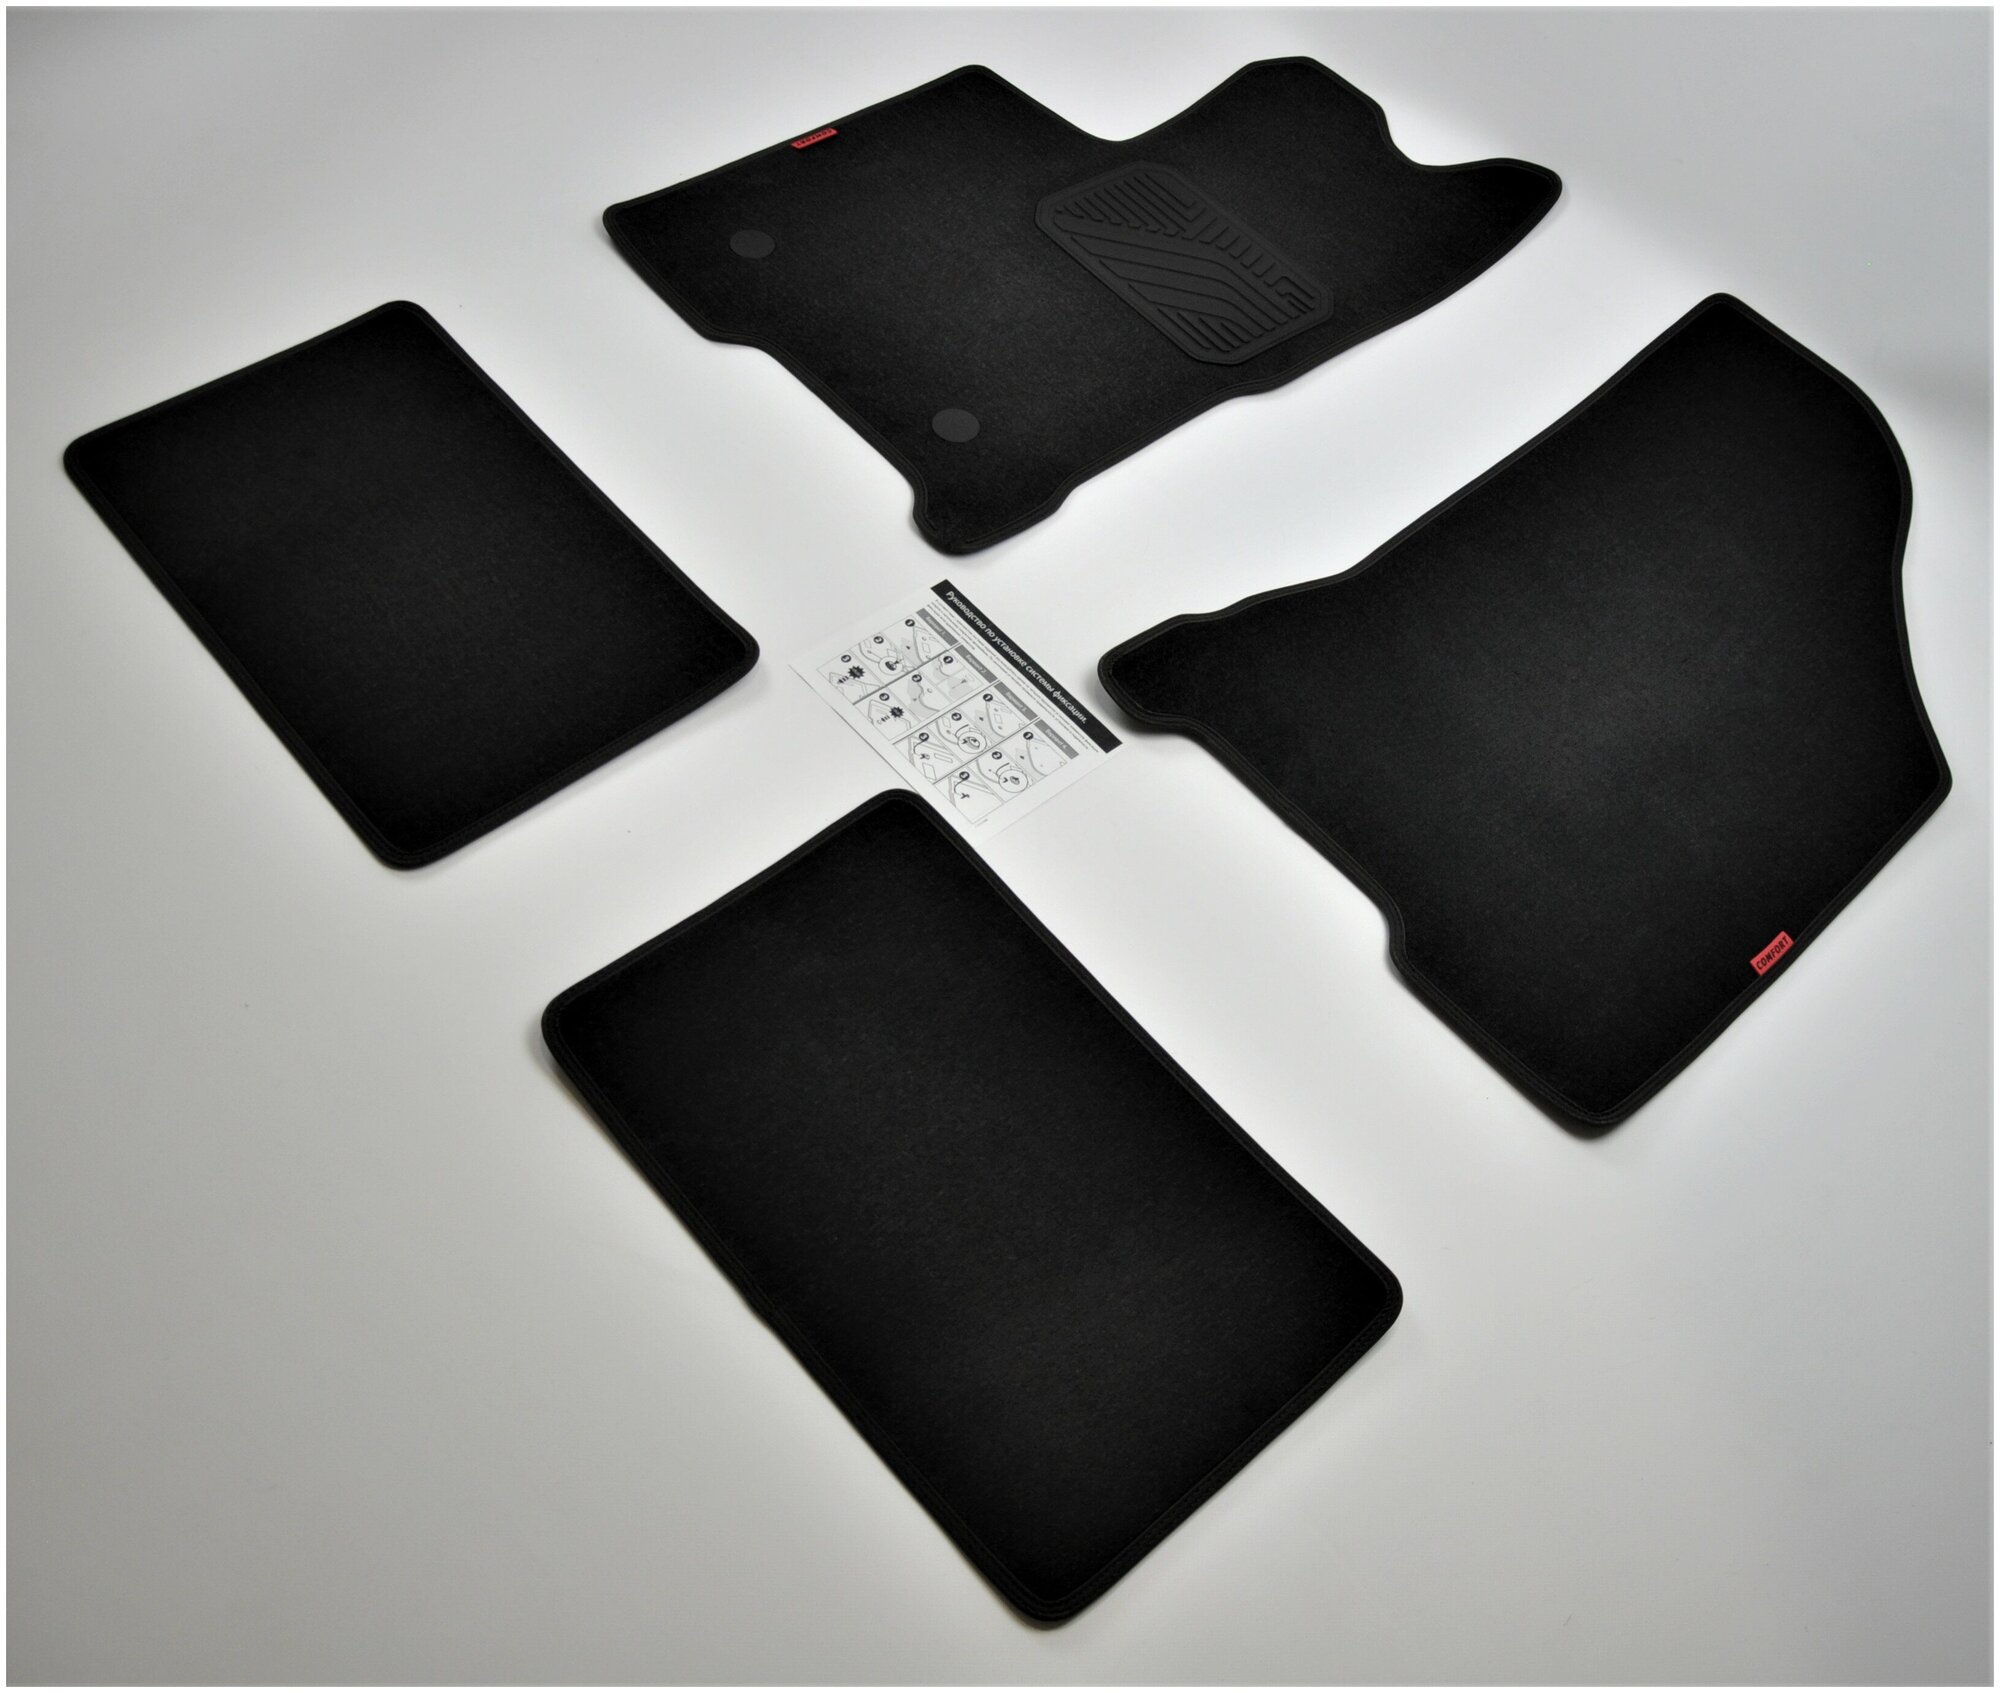 Коврики в салон текстиль комплект для ВАЗ Lada Vesta седан 2015-, универсал 2017-, Cross 2017- на резиновой основе с крепежом.